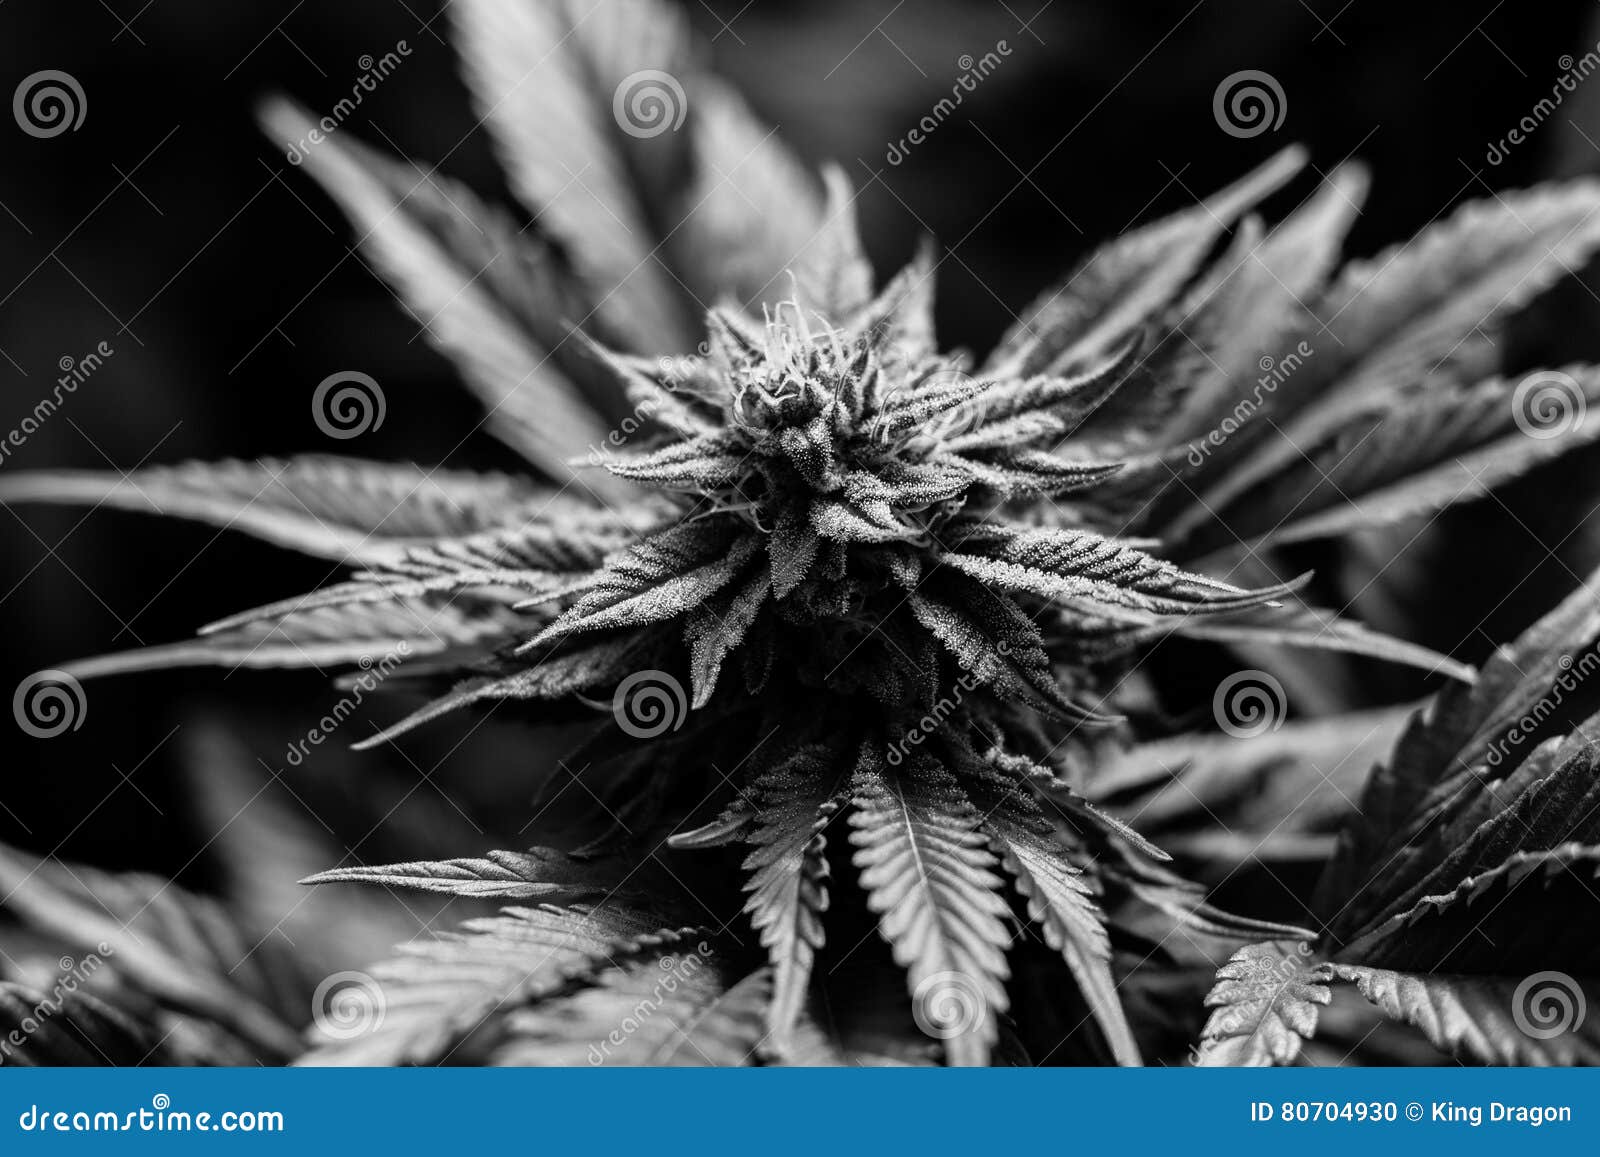 Медицинская марихуана калифорния семена конопли в украине